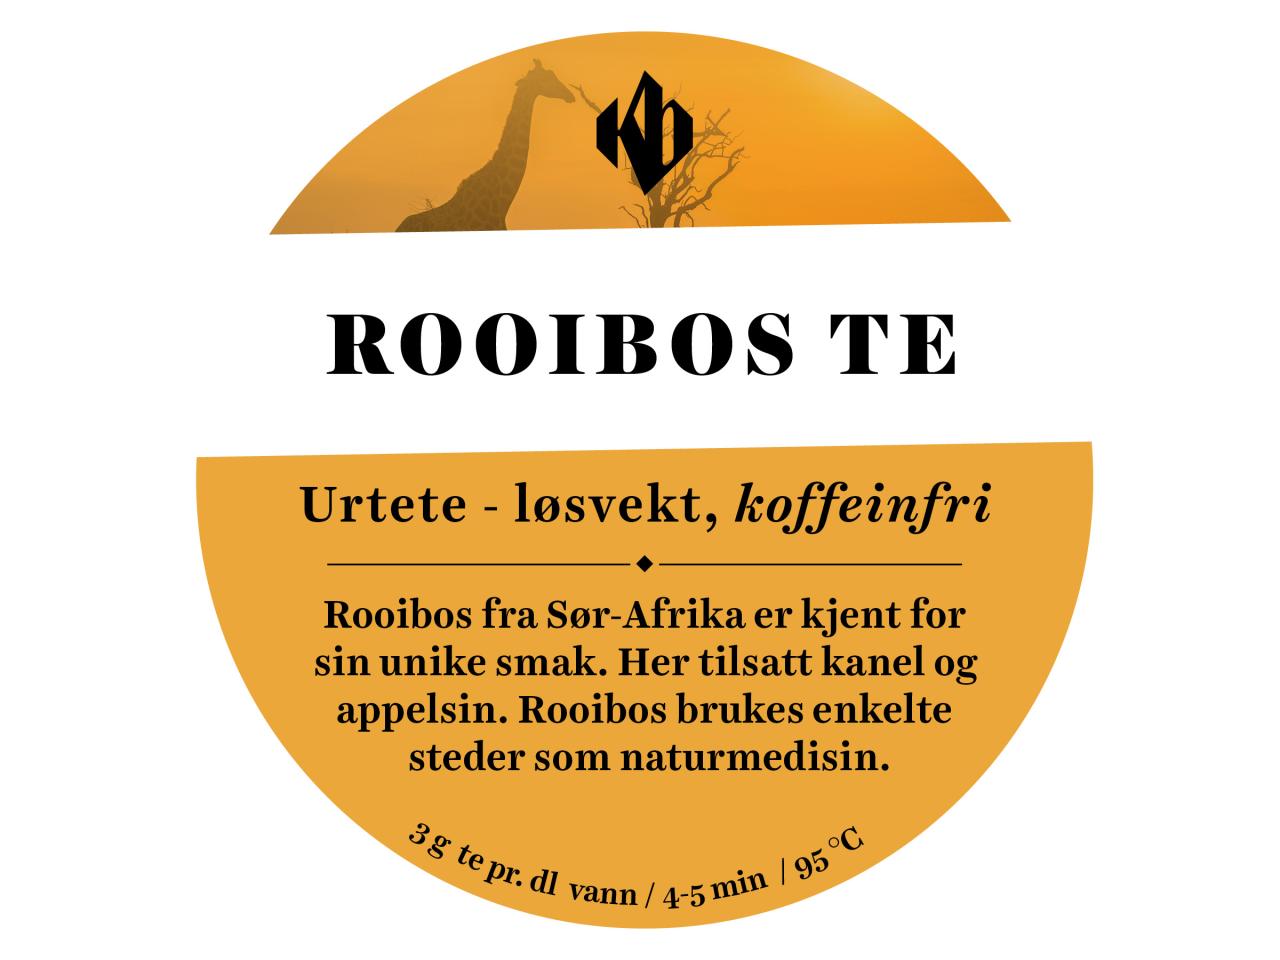 Rooibos - løsvekt